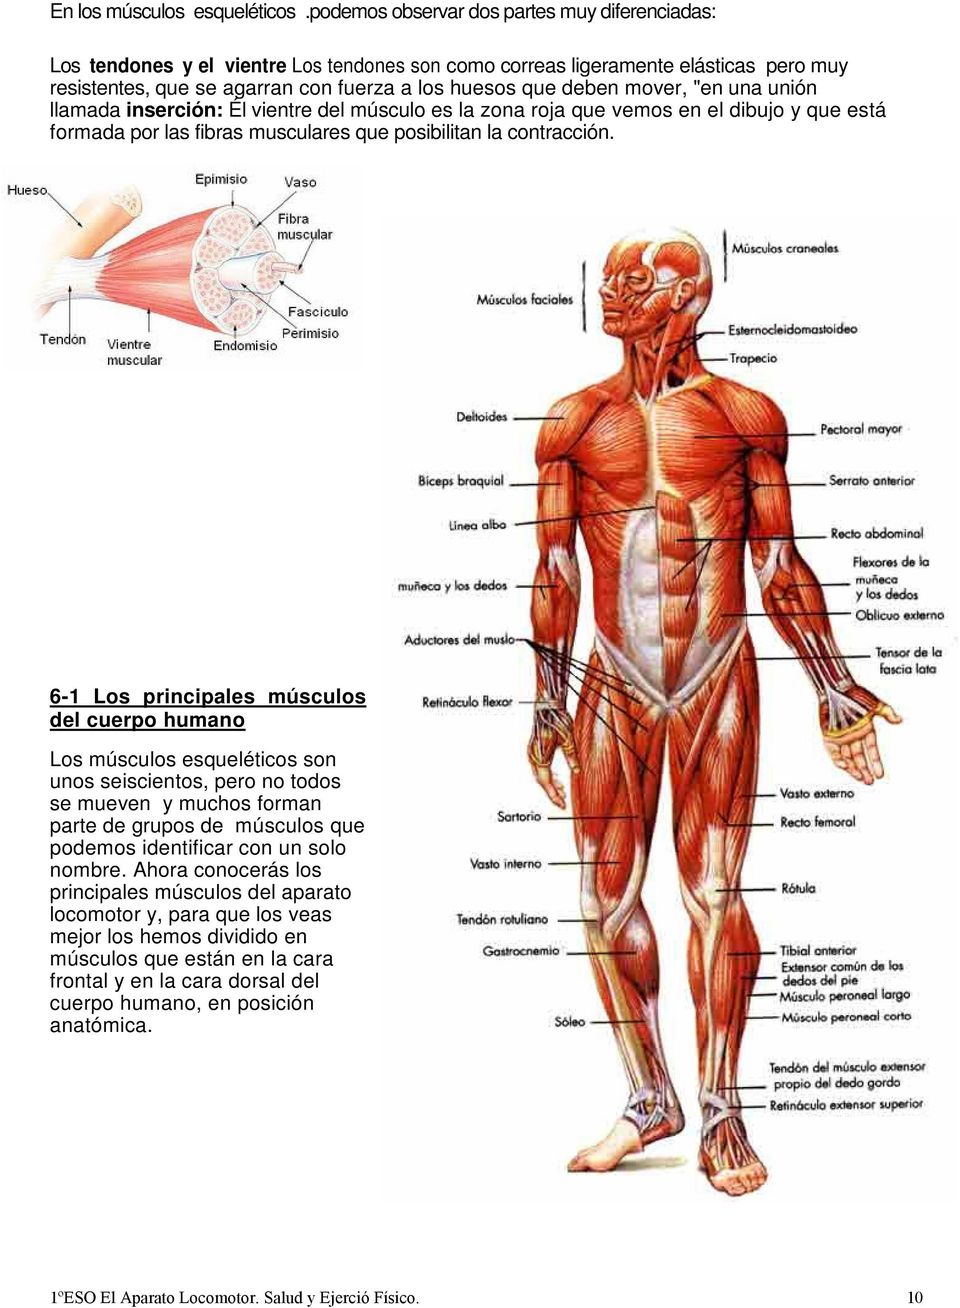 mover, "en una unión llamada inserción: Él vientre del músculo es la zona roja que vemos en el dibujo y que está formada por las fibras musculares que posibilitan la contracción.